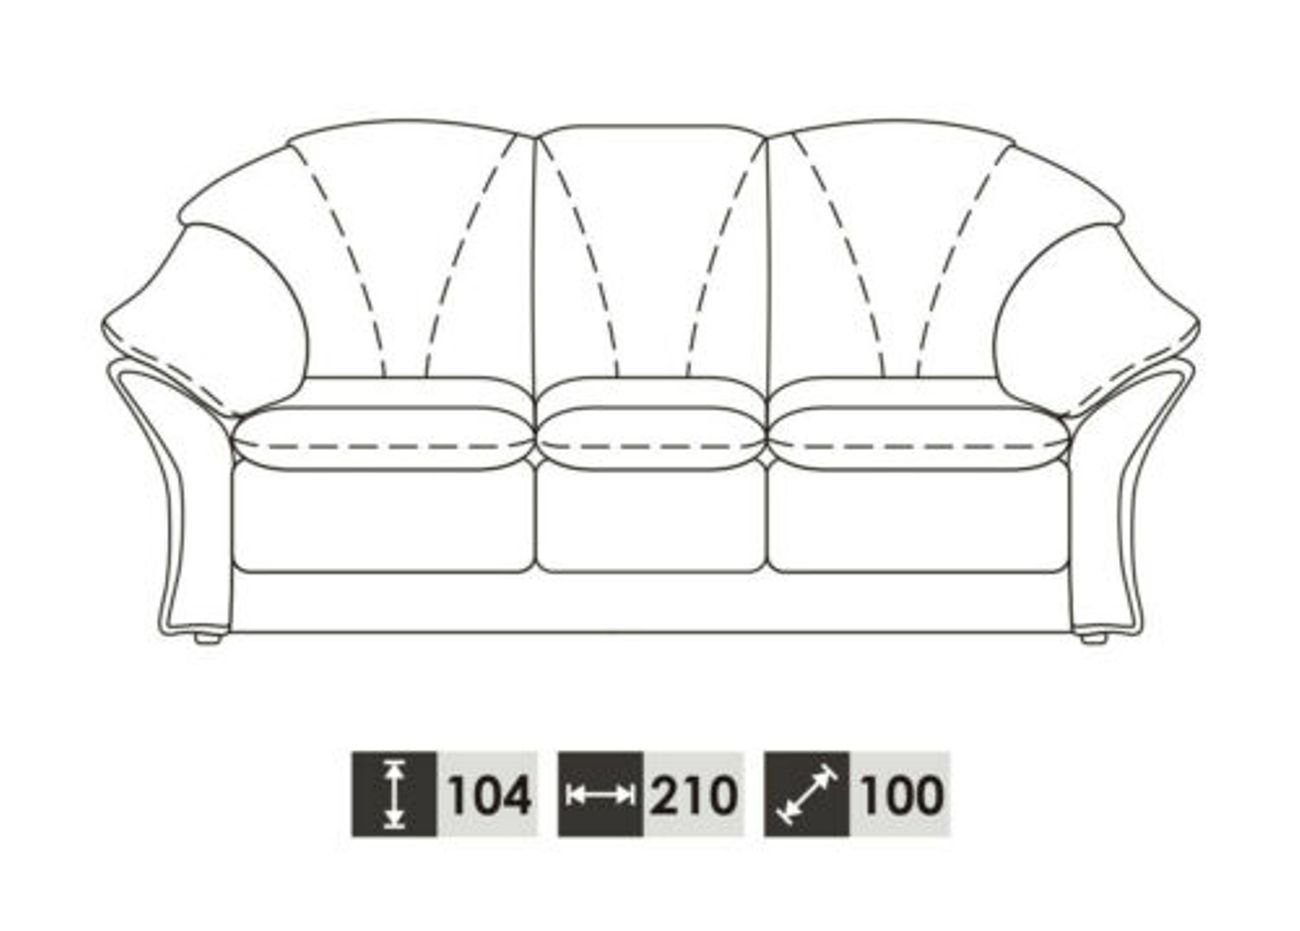 JVmoebel Sofa 100% 3+1 in Wohnzimmer Garnitur Made Vollleder Europe Couch, Klassische